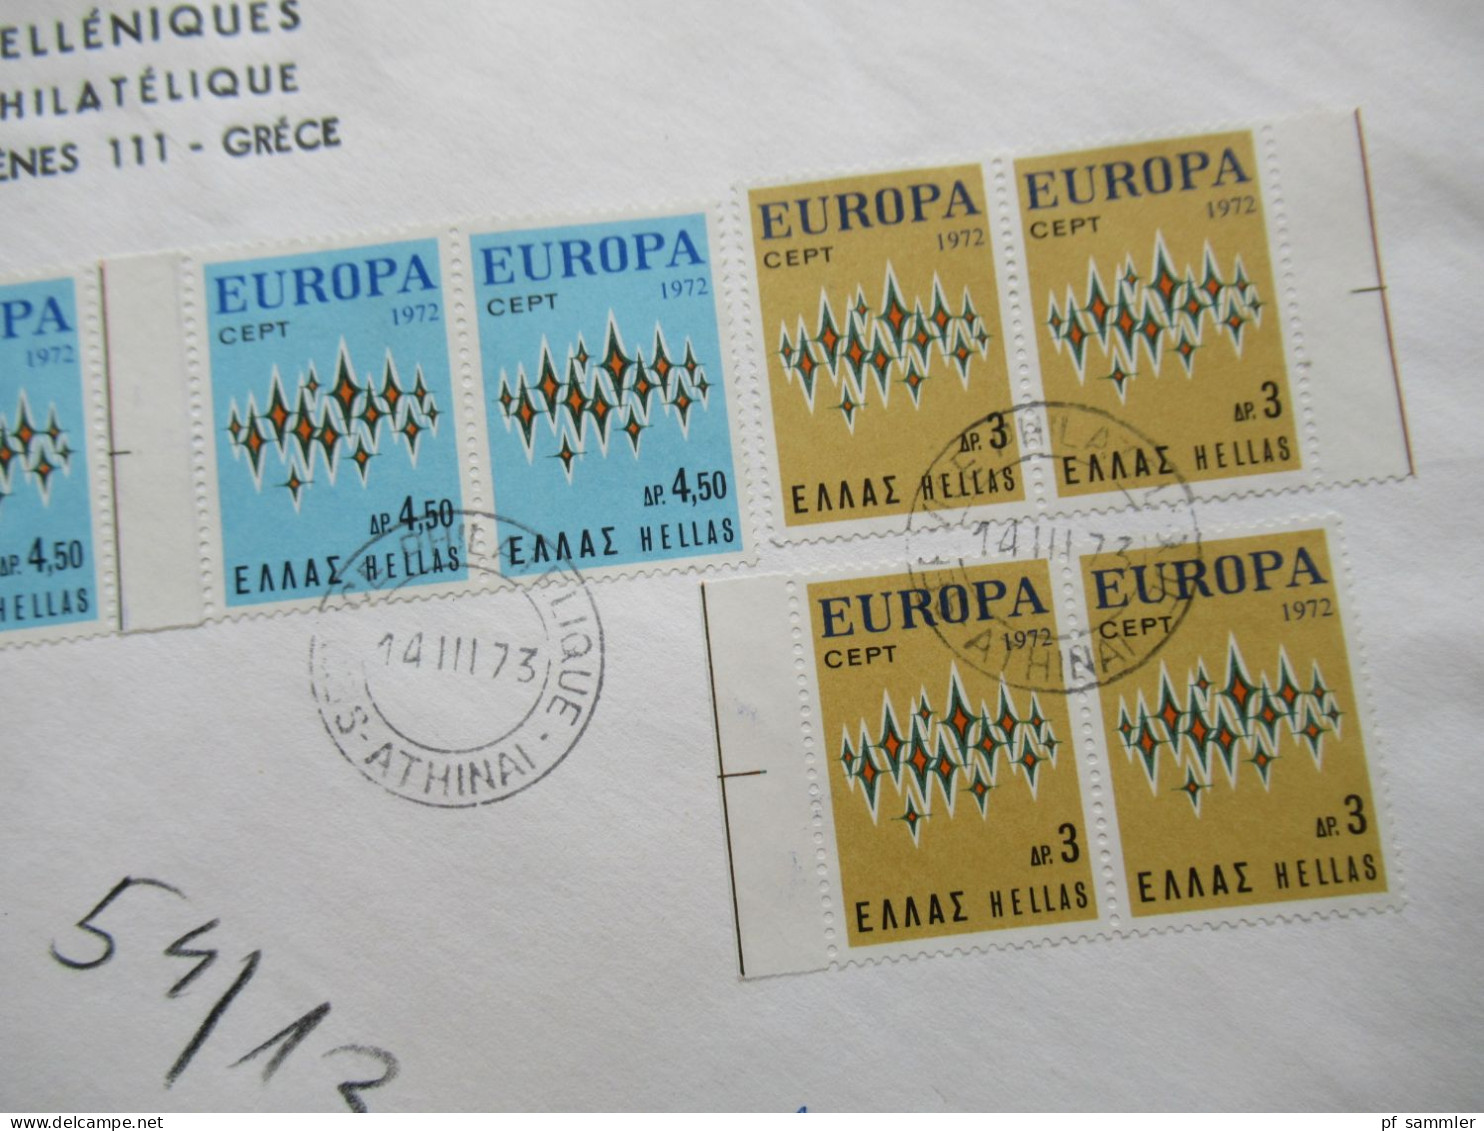 Griechenland Europa Cept 1972 Einschreiben Athinai Postes Helleniques Service Philatelique Nach Bamberg Gesendet - Lettres & Documents